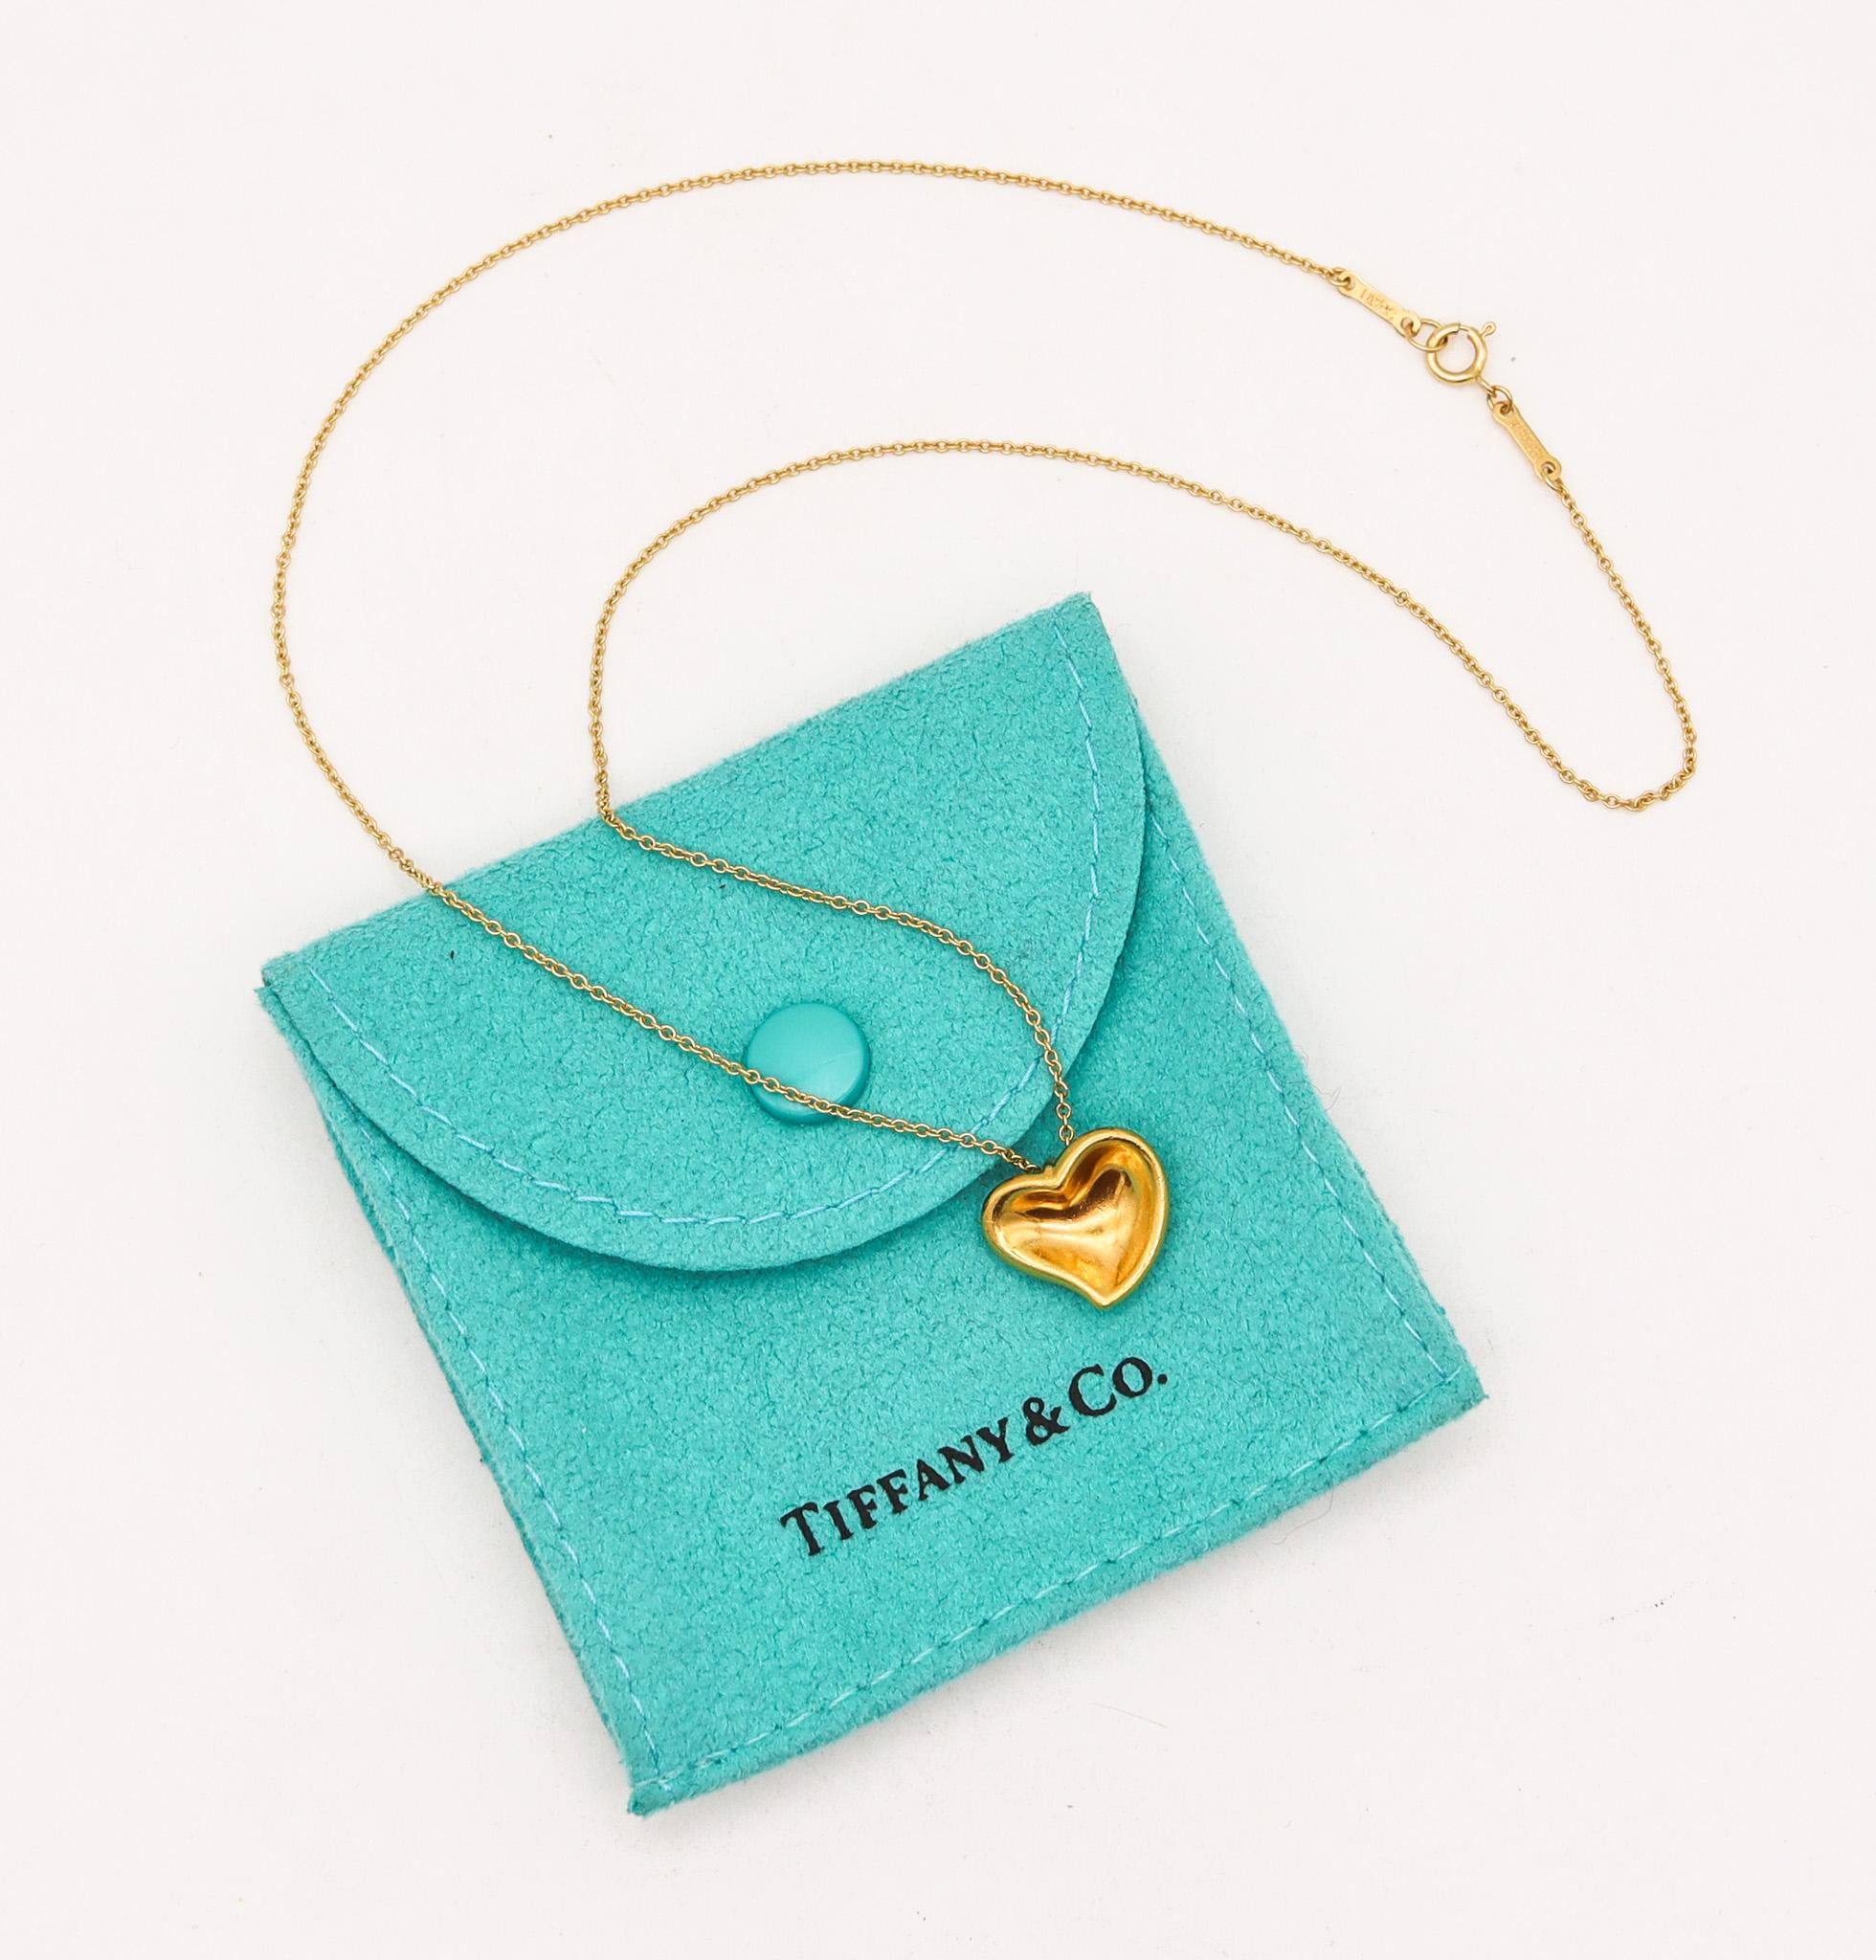 Herz-Halskette, entworfen von Elsa Peretti (1940-2021) für Tiffany & Co.

Sehr seltene Herz-Halskette für Sammler, von Elsa Peretti für die Studios von Tiffany & Co. entworfen. Dieses Stück wurde aus massivem, reinem Gelbgold von 24 Karat gefertigt